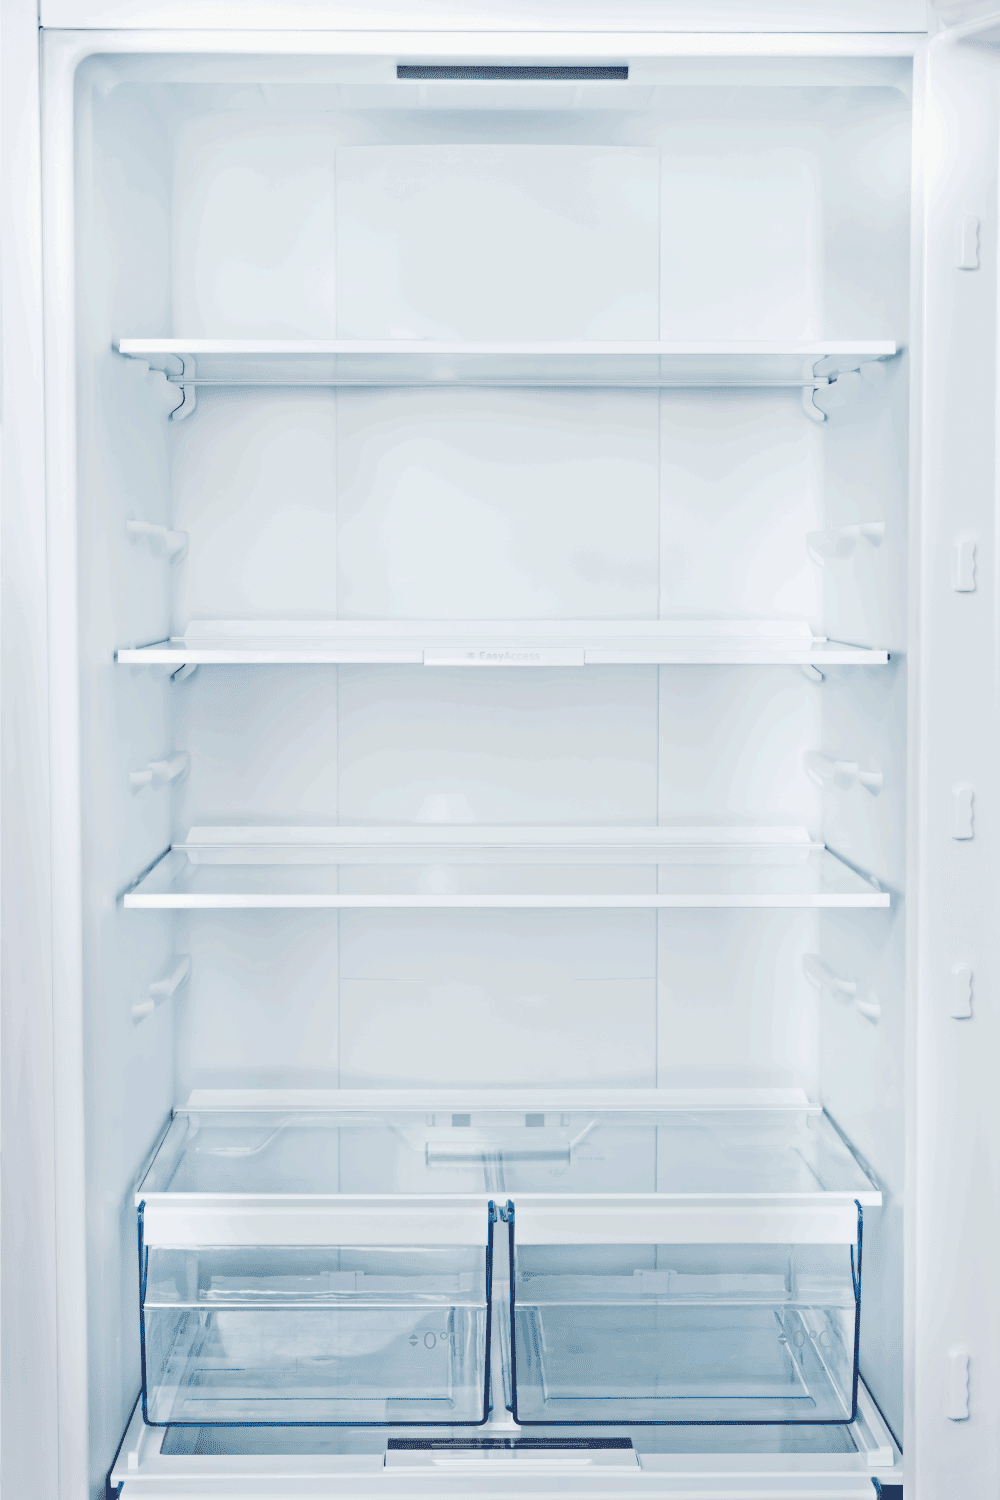 Empty Refrigerator with door open